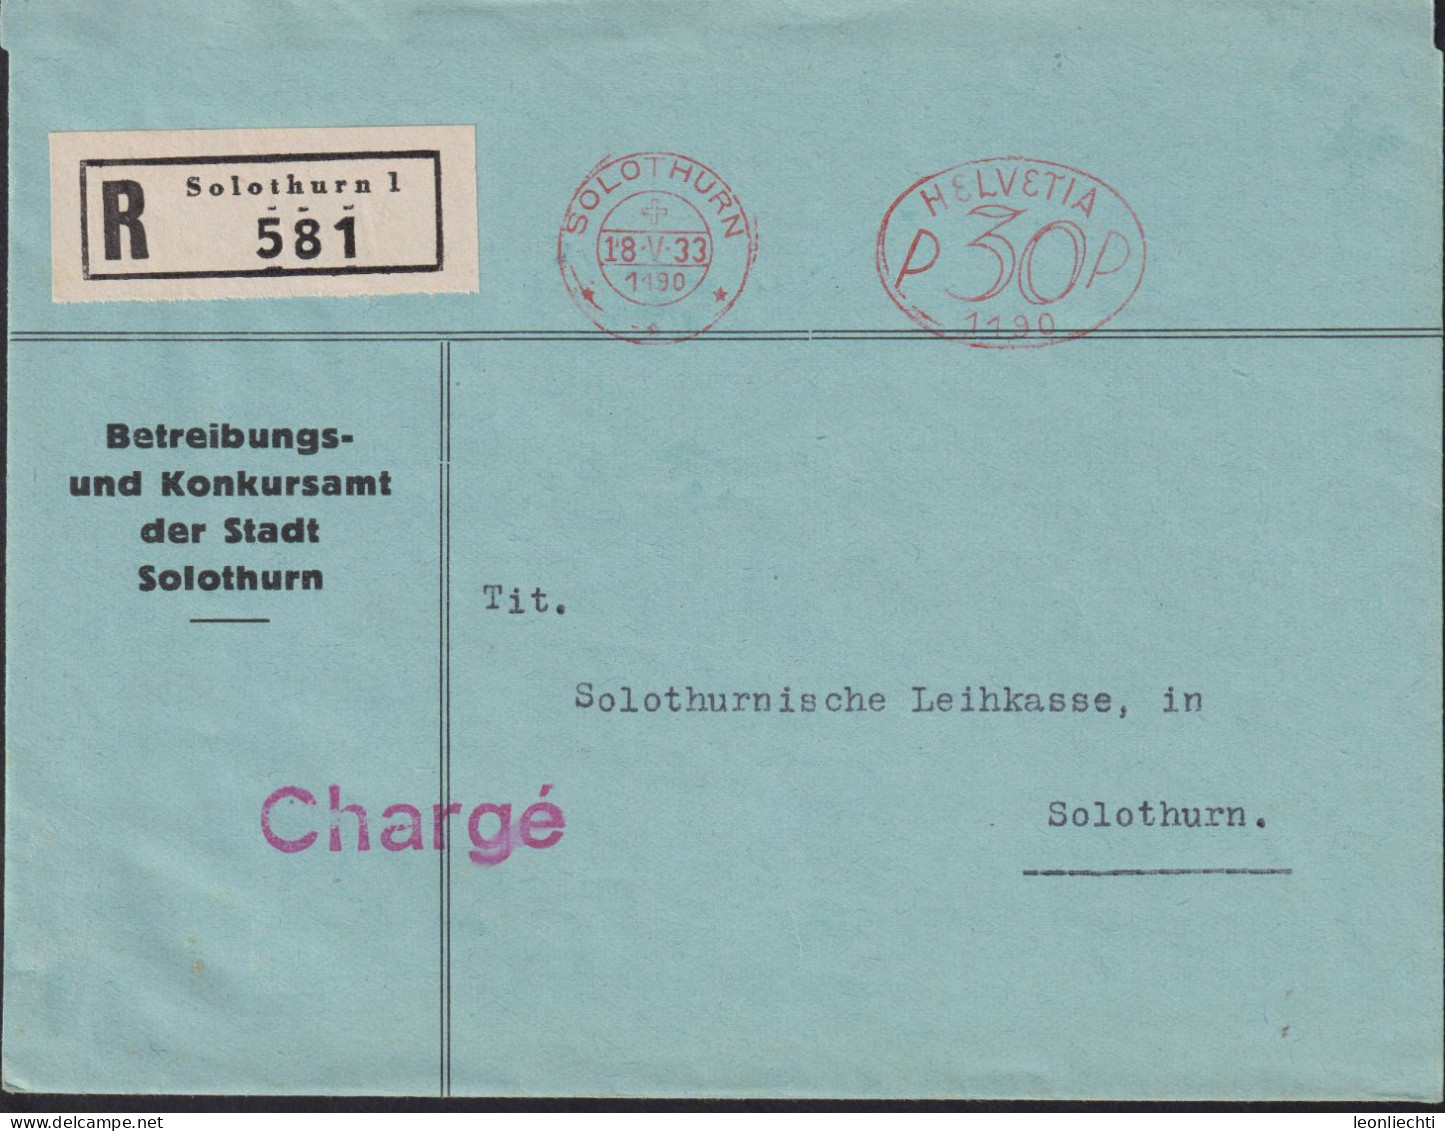 1933 Schweiz, R-Brief (FraMA)  Solothurn + HELVETIA P 30 1190, Betreibungs U. Konkursamt Der Stadt Solothurn - Máquinas De Franquear